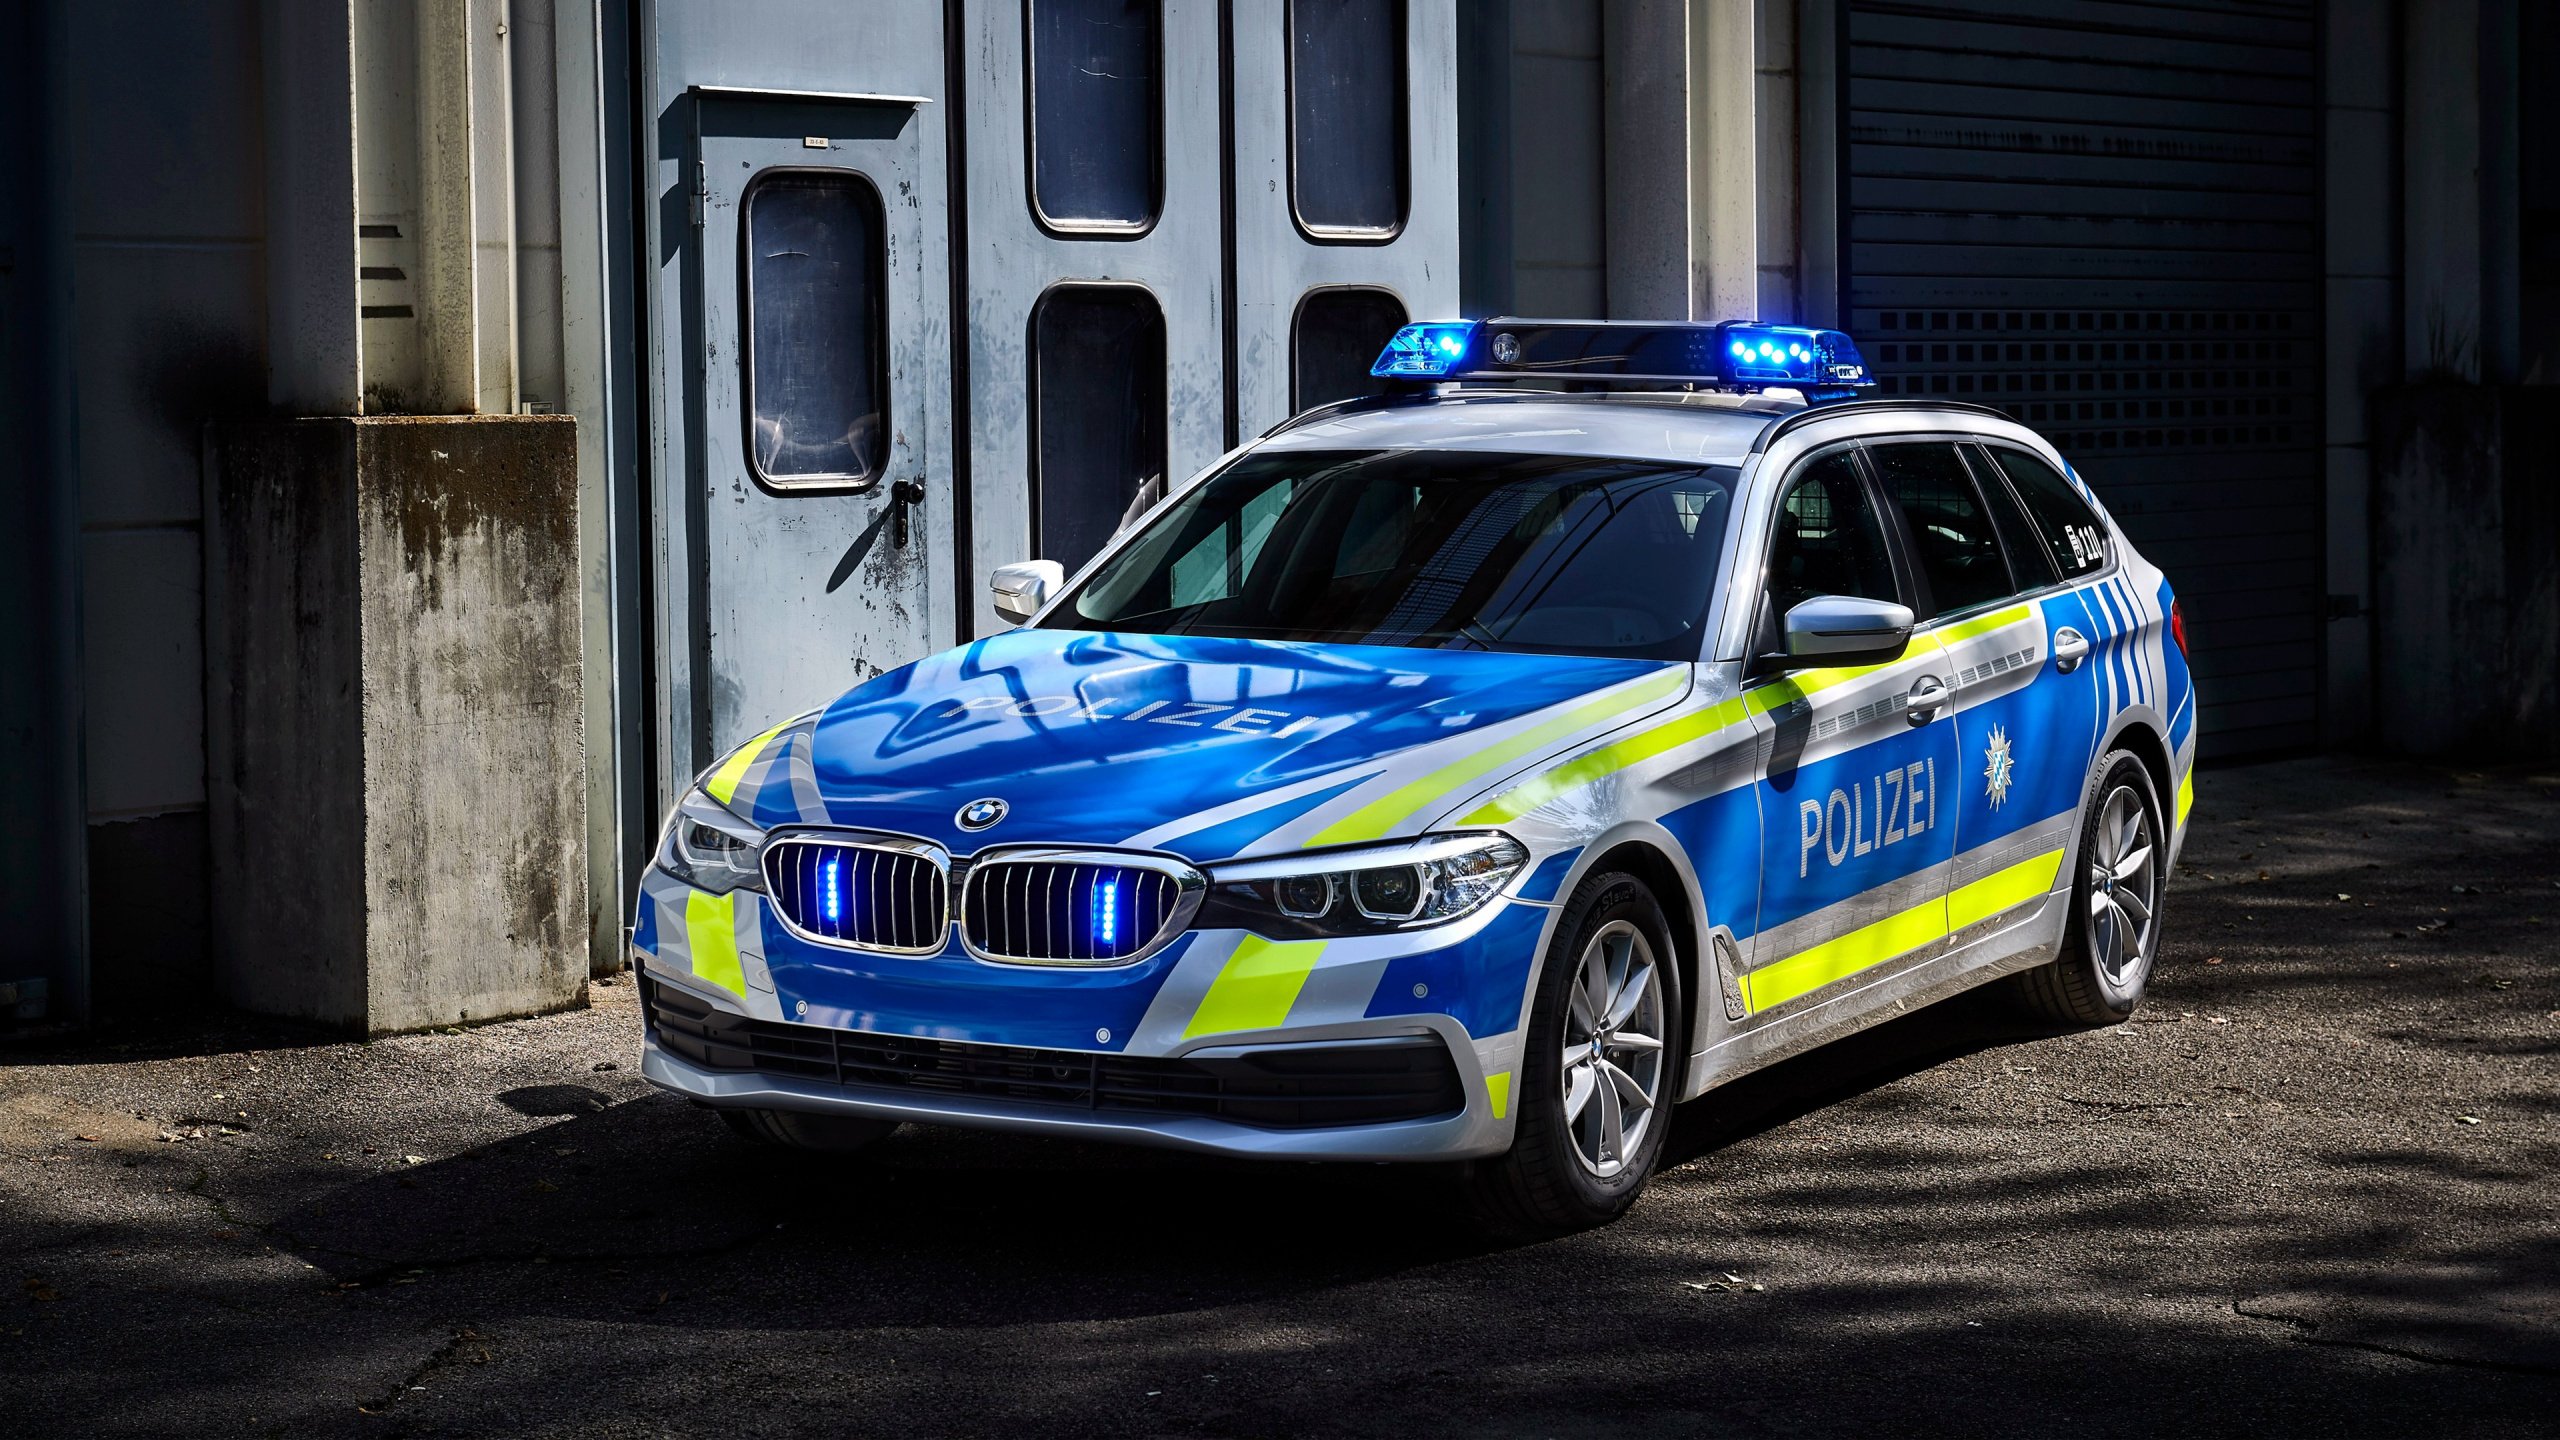 Зеленая полицейская машина. Полиция БМВ 530. BMW m3 Police. БМВ 545i Police. BMW Polizei.